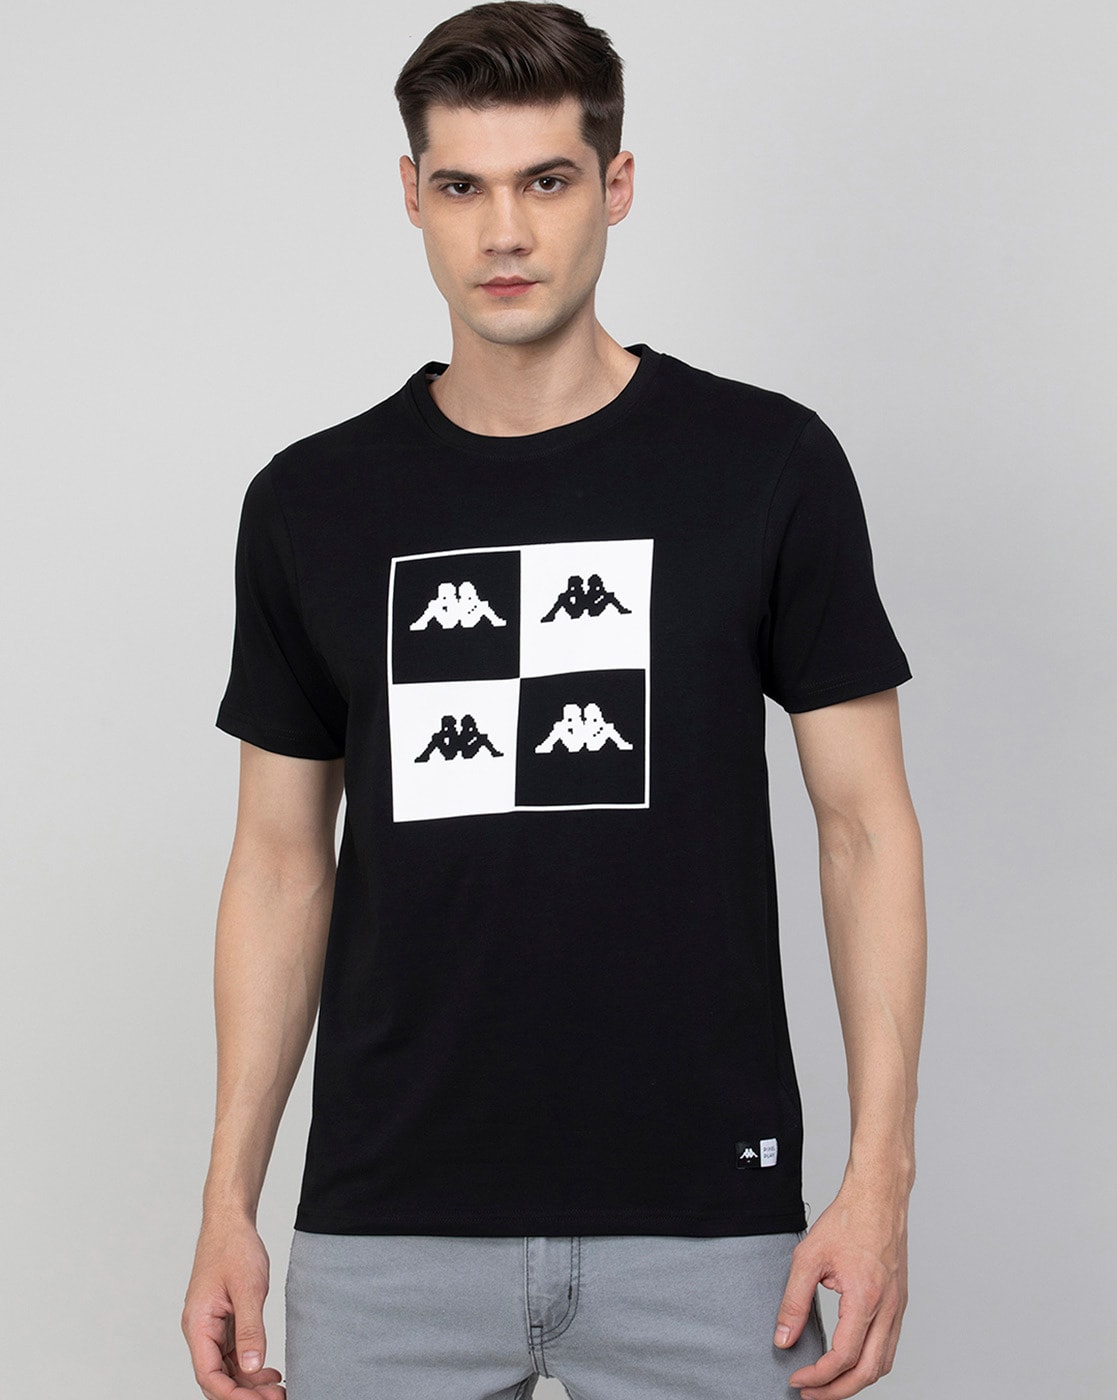 Cornwall banan forbundet Buy Black Tshirts for Men by Kappa Online | Ajio.com